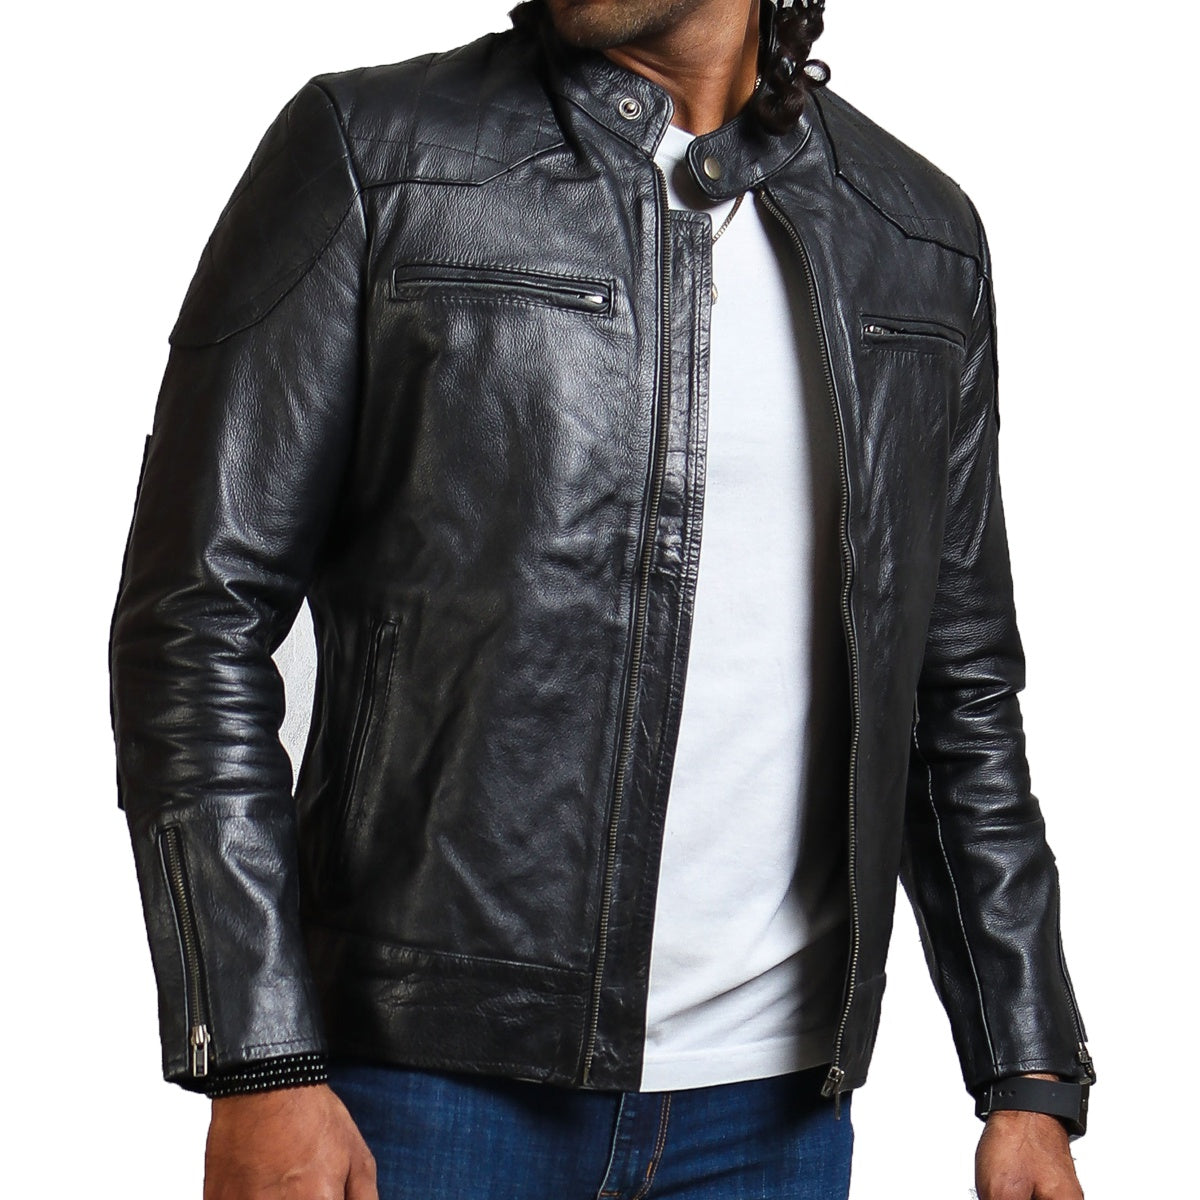 Black Biker Leather Jacket David Beckham 